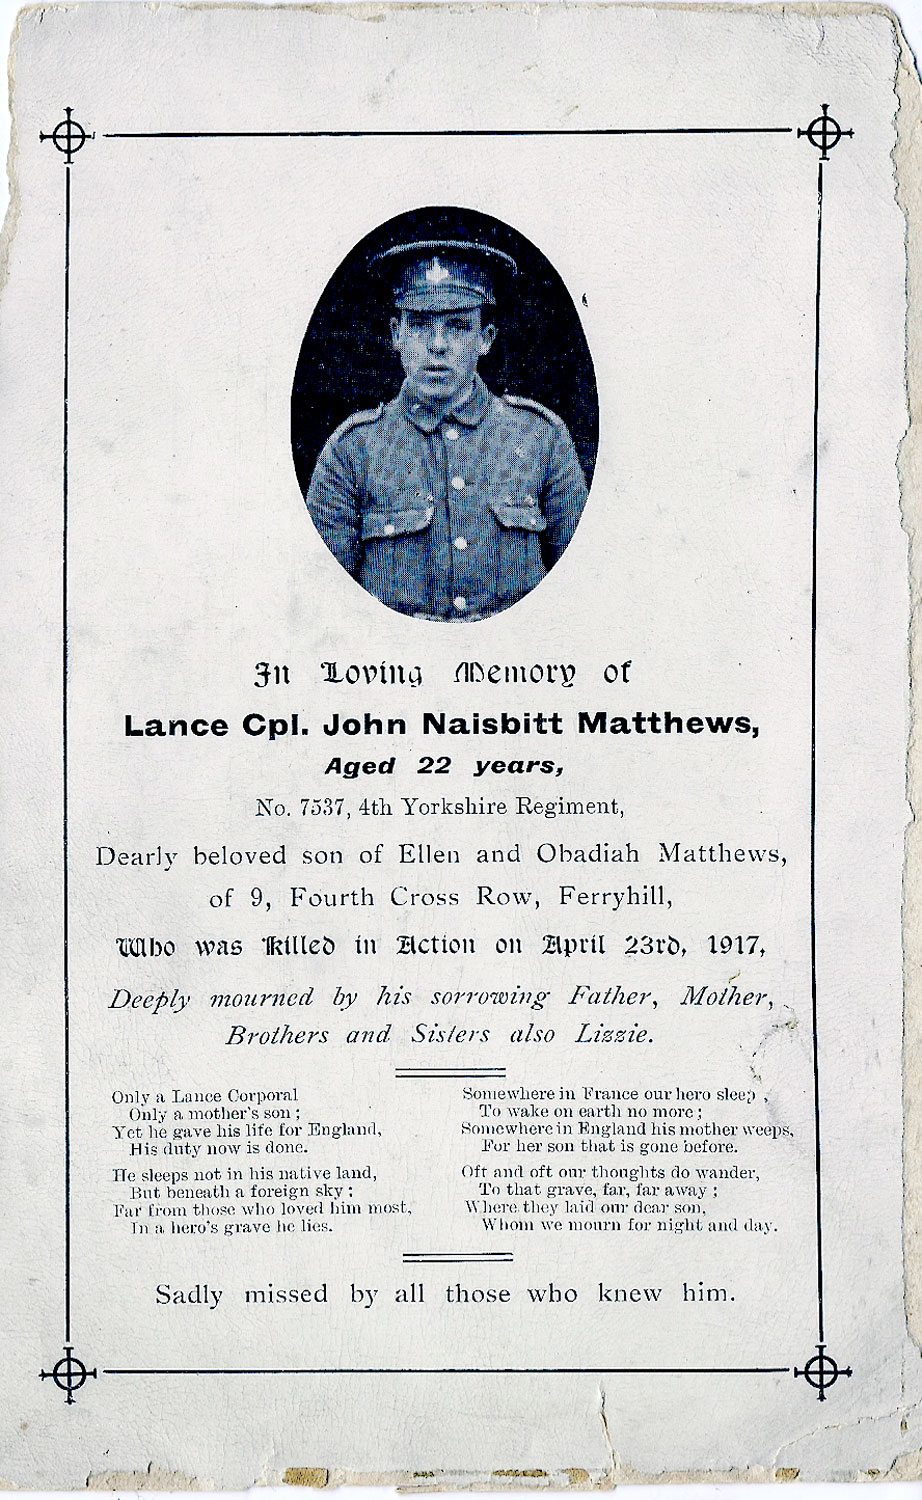 The Memorial Card for John Naisbitt Matthews